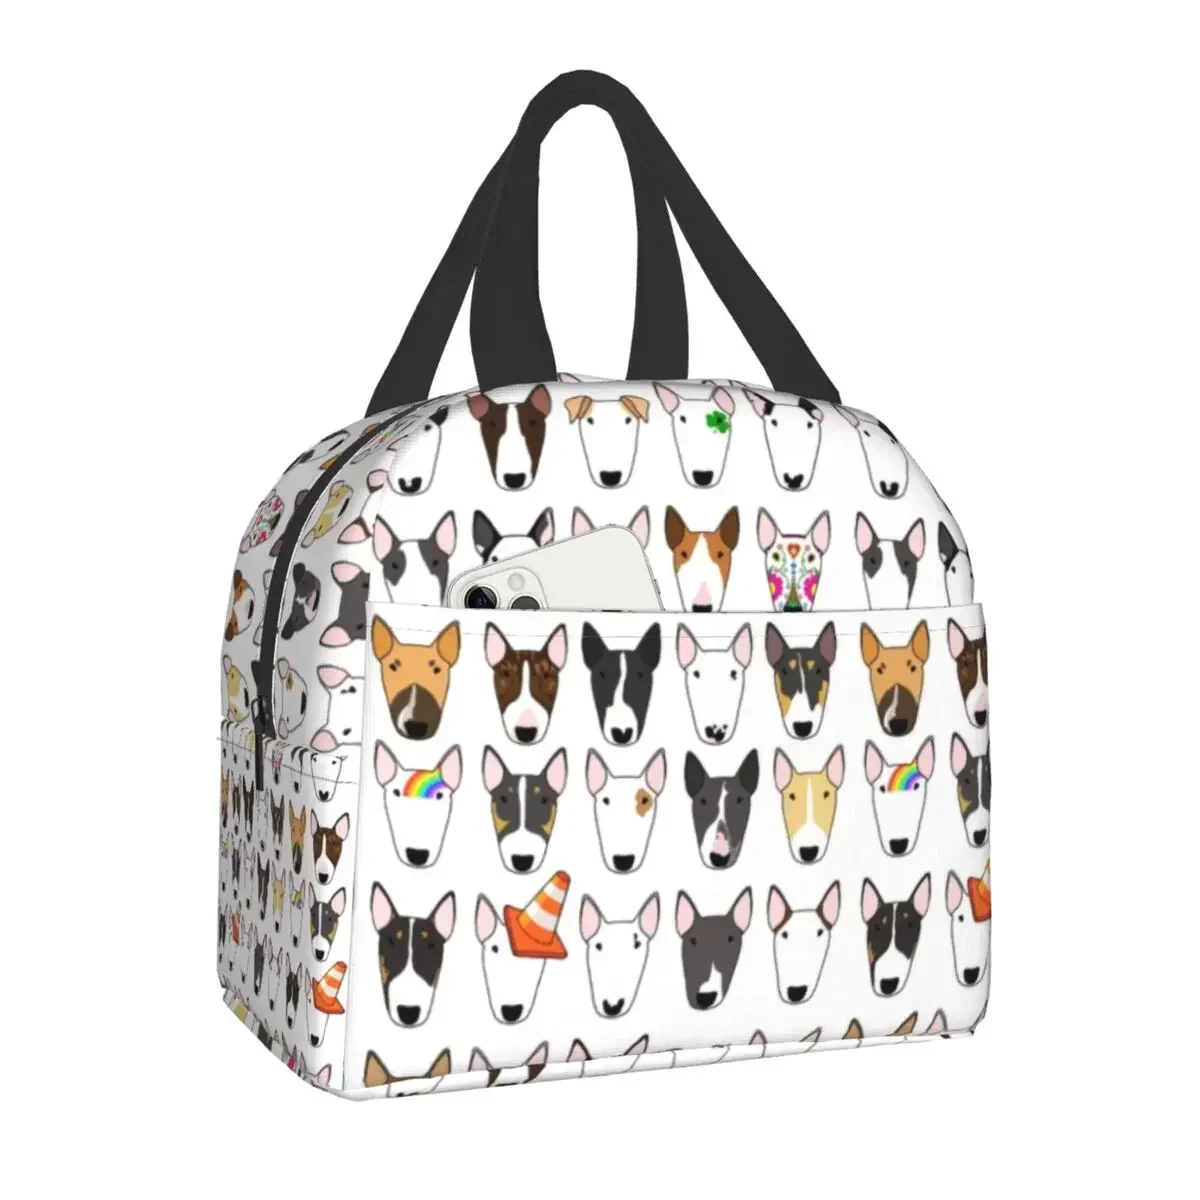 

Изолированная сумка для ланча с рисунком Бультерьера для женщин, термоохлаждающий Ланч-бокс с повторяющимся рисунком животных для детей и школьников